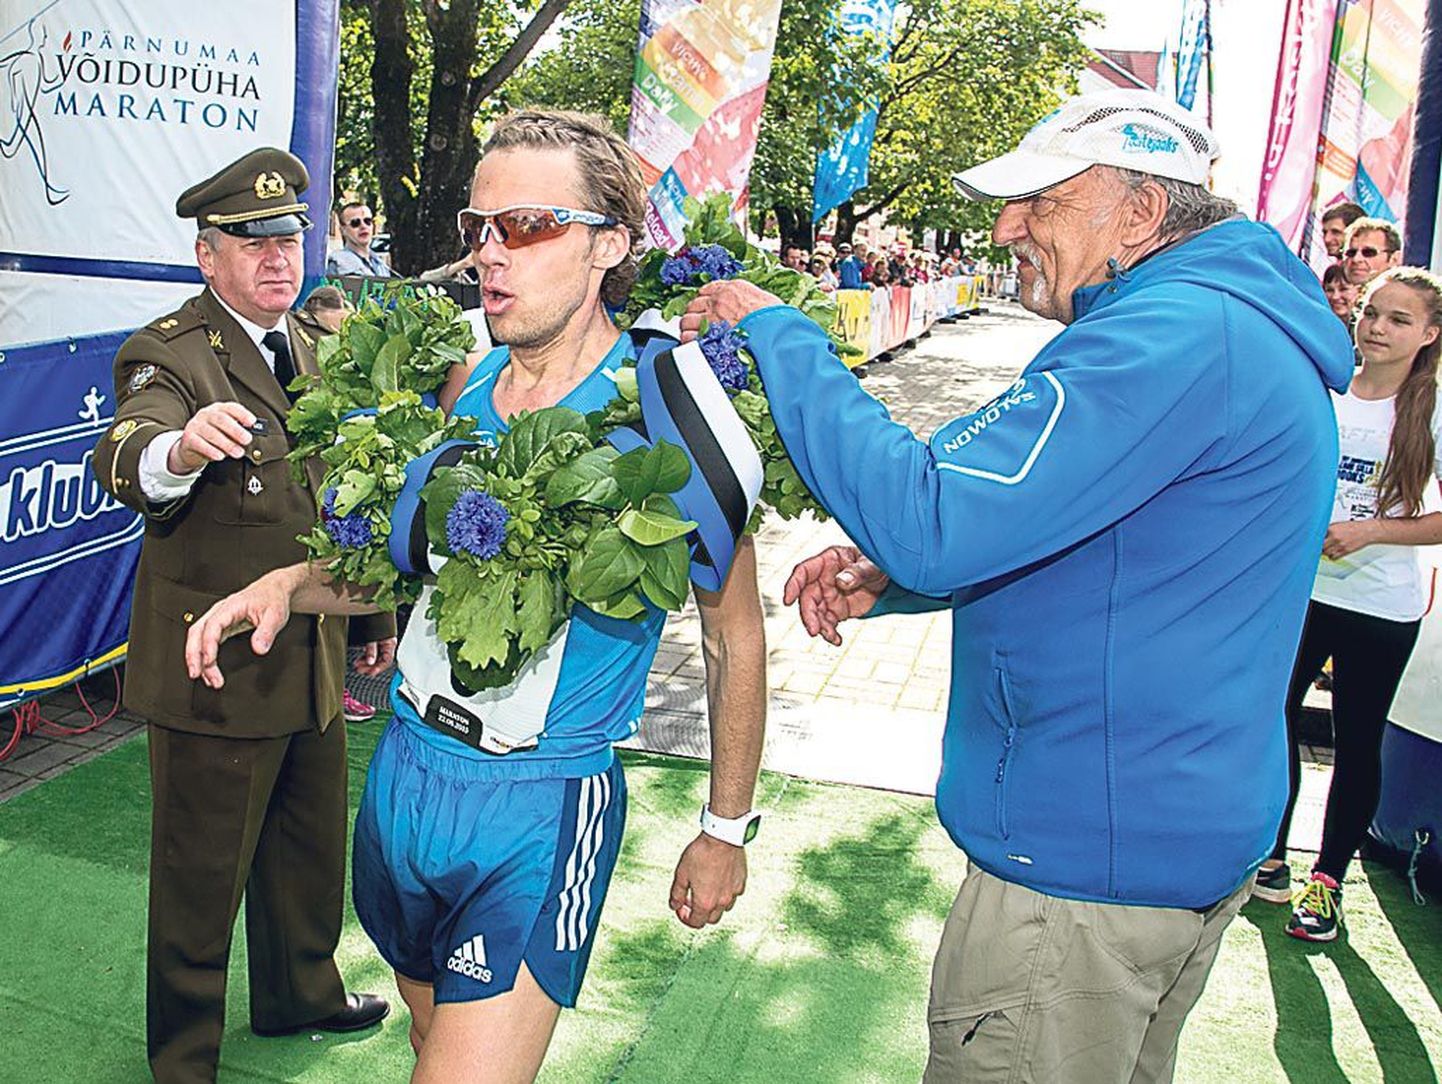 Neljanda võidupüha maratoni 42,195 kilomeetrit läbisid kõige kiiremini Maris Tamm ja Kristo Reinsalu, kummalegi polnud see esimene kord Pärnus Rüütli platsil triumfeerida.